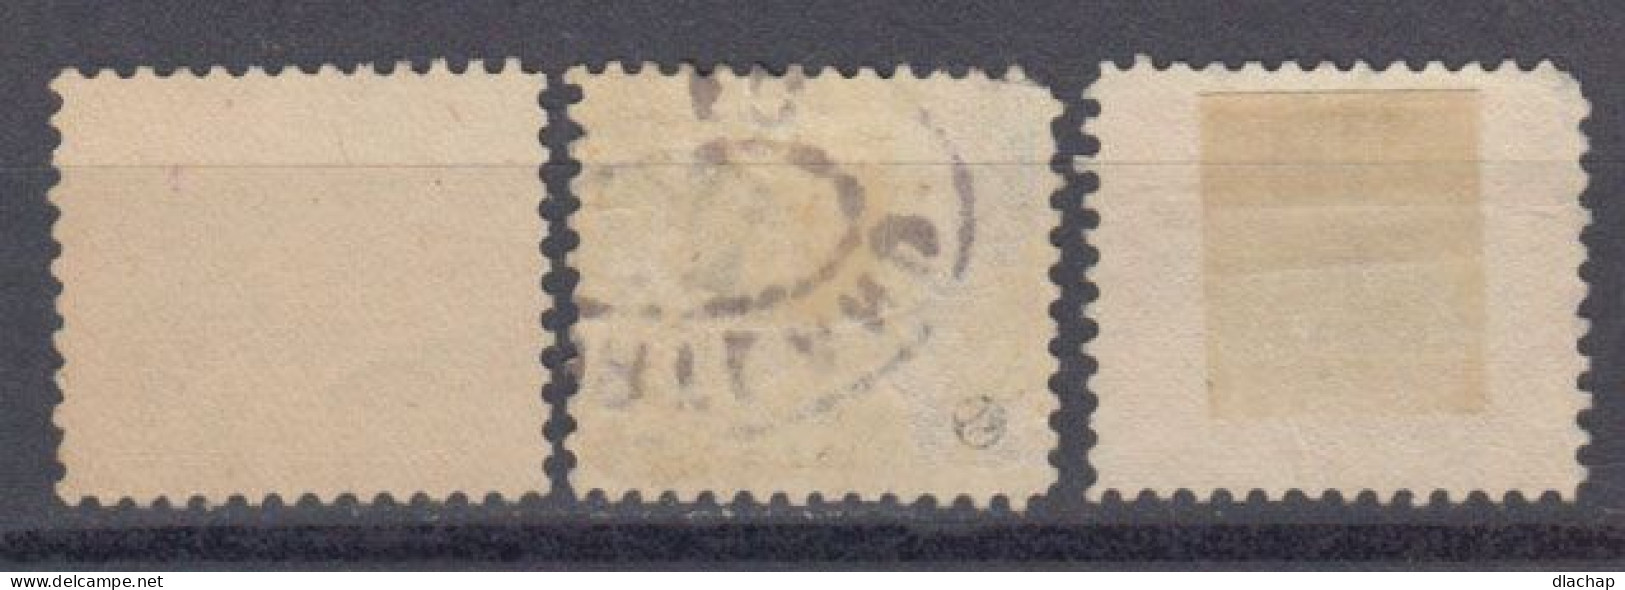 Etats Unis Poste Aerienne 1918 Yvert 1 / 3 Obliteres - 1a. 1918-1940 Used